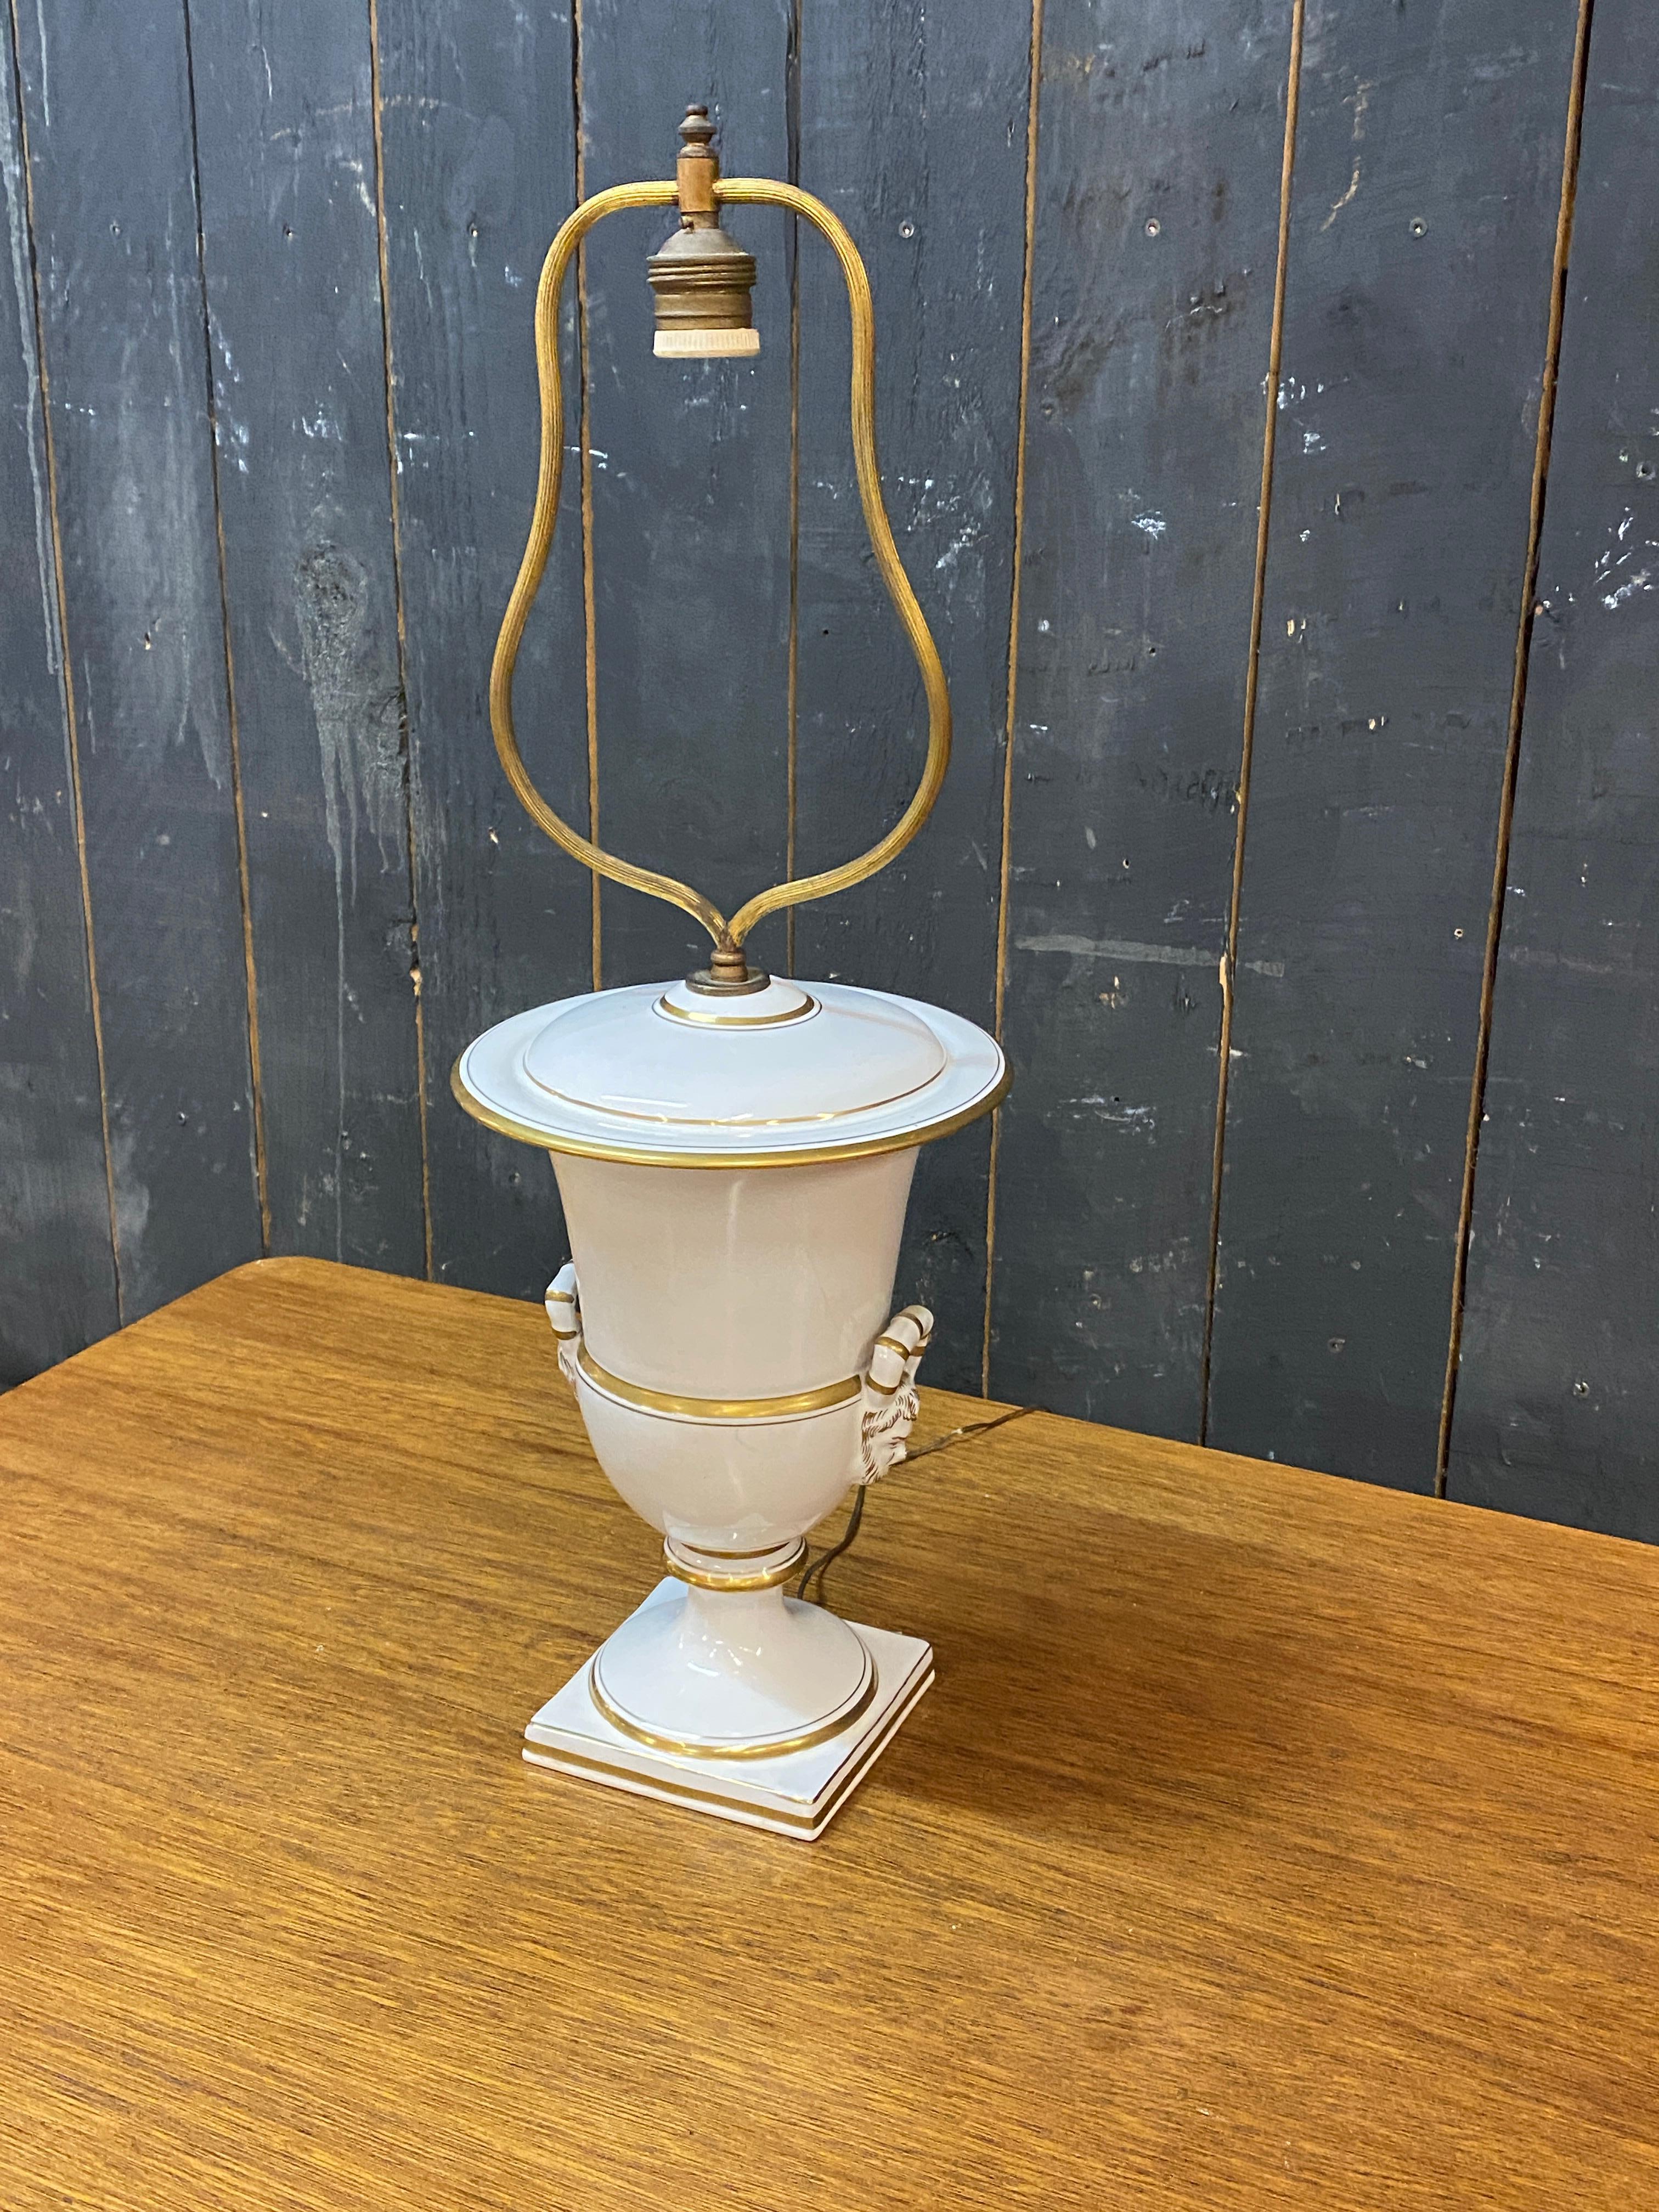 Louis Philippe table lamp, Paris porcelain style circa 1850   For Sale 2